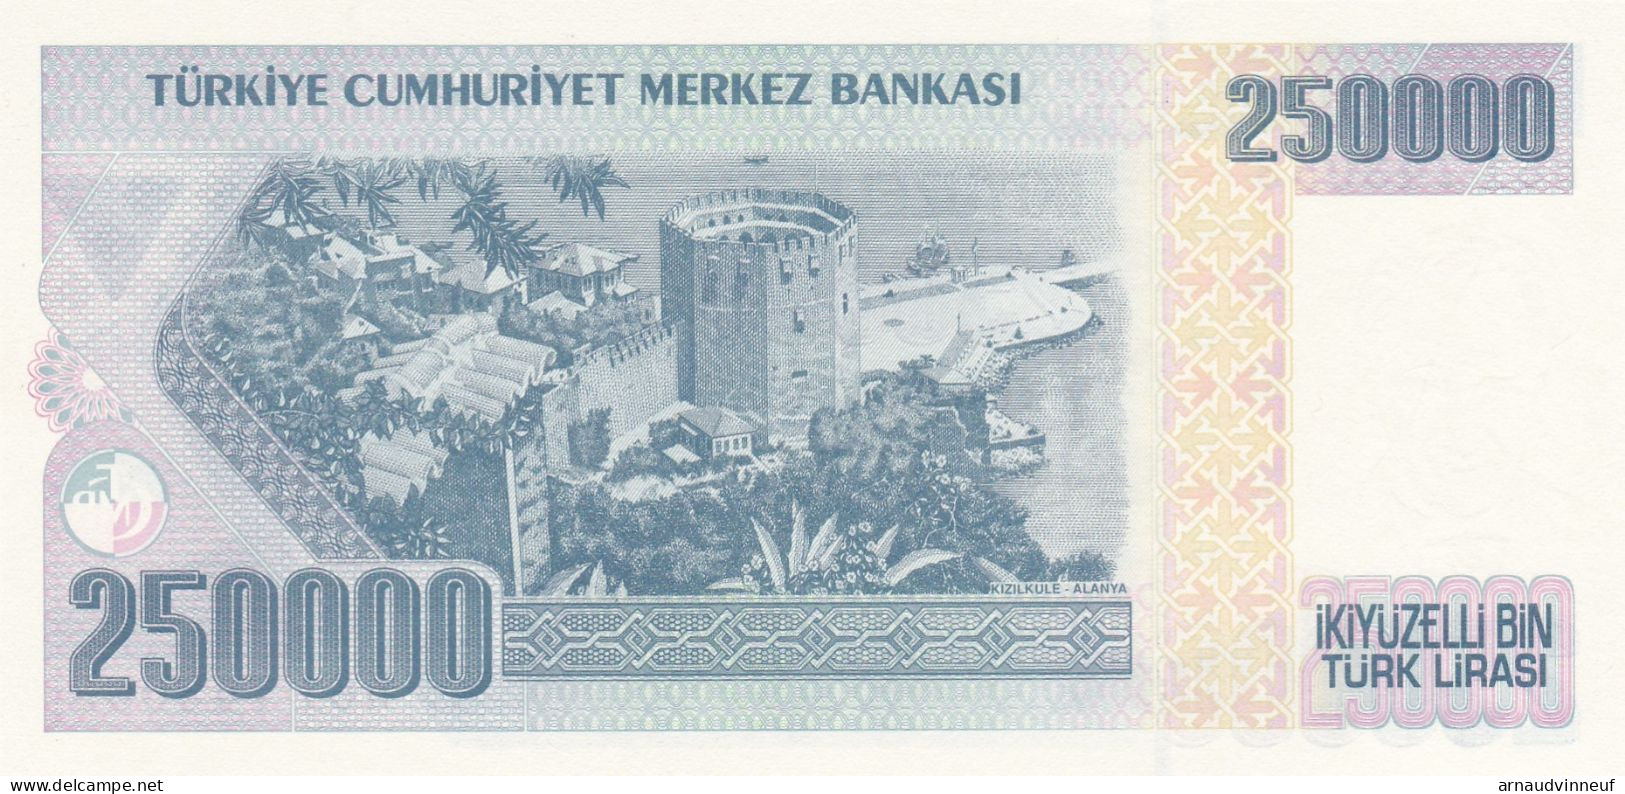 TURQUIE 250000 TURK LIRASI - Turkey